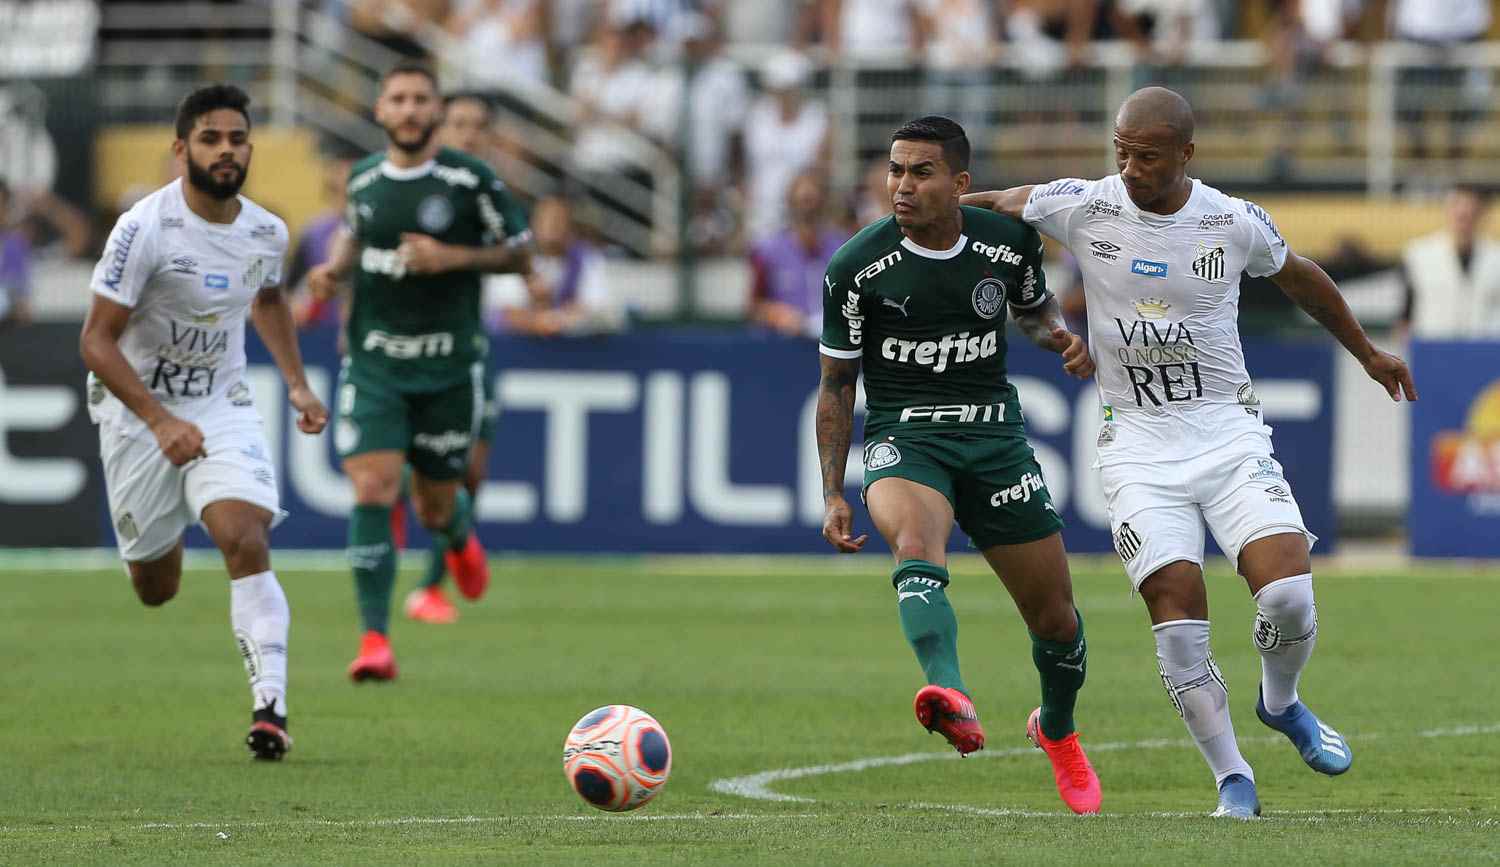 Dudu fez três gols contra Red Bull Bragantino, Flamengo, Bahia, Cruzeiro e Grêmio; e dois contra Goiás, Mogi Mirim, Ponte Preta, Corinthians, Santa Cruz, Avaí, Sport, Botafogo, Colo-Colo e Chapecoense.